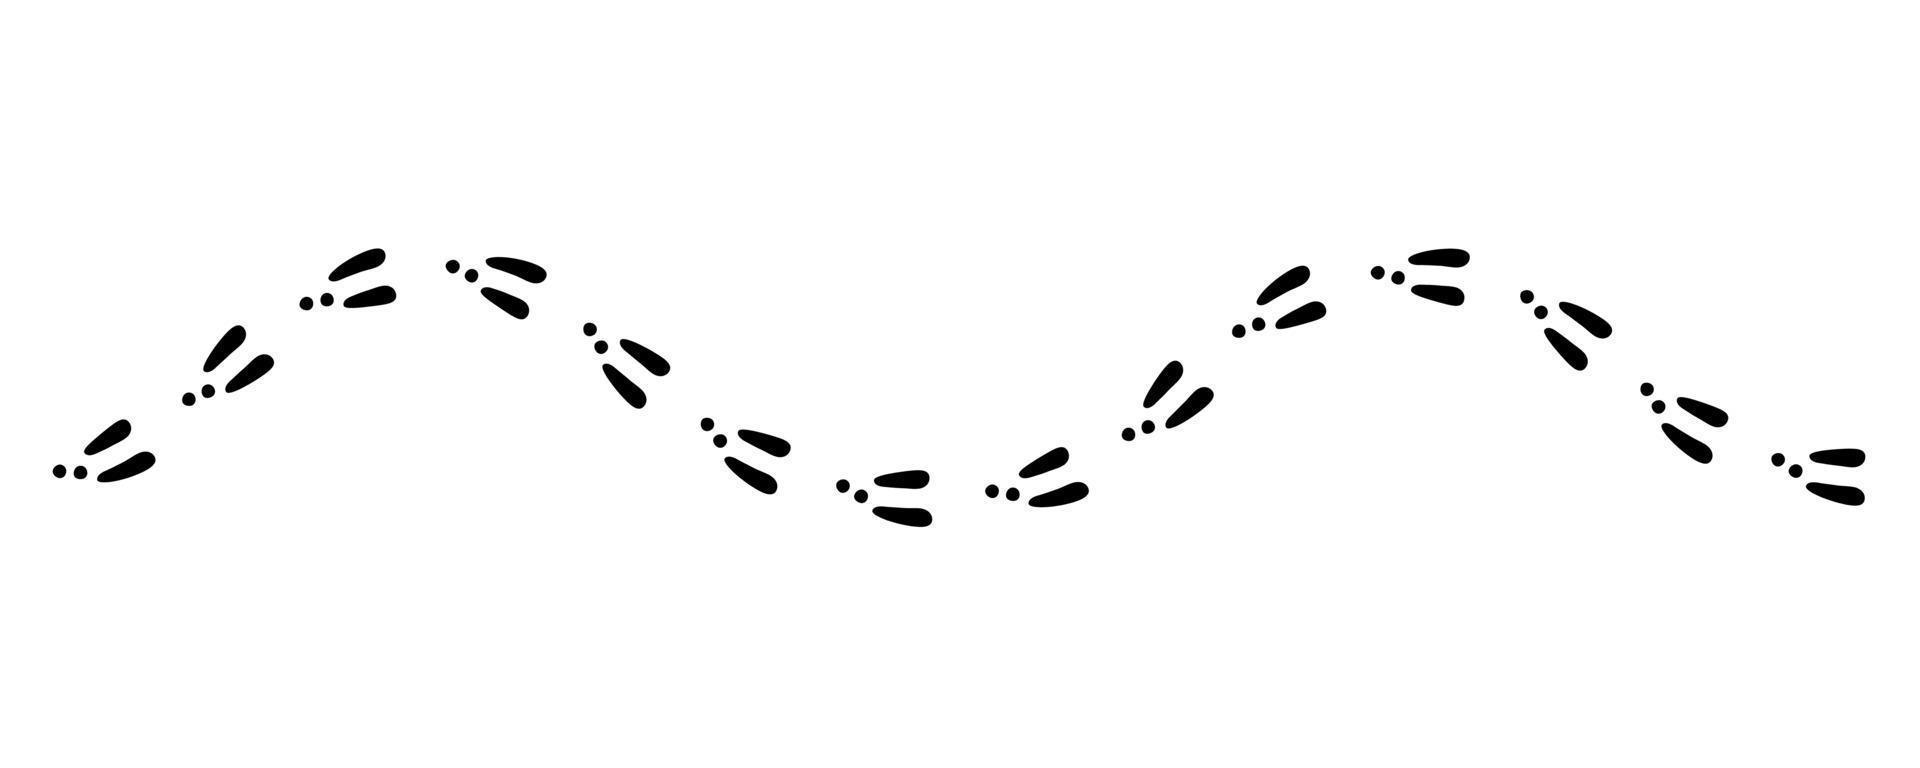 rastro de huella de conejo o liebre. Huellas de conejo en la nieve. pasos de pata de conejo. pista de pasos de liebre. ilustración vectorial aislada sobre fondo blanco en estilo plano vector